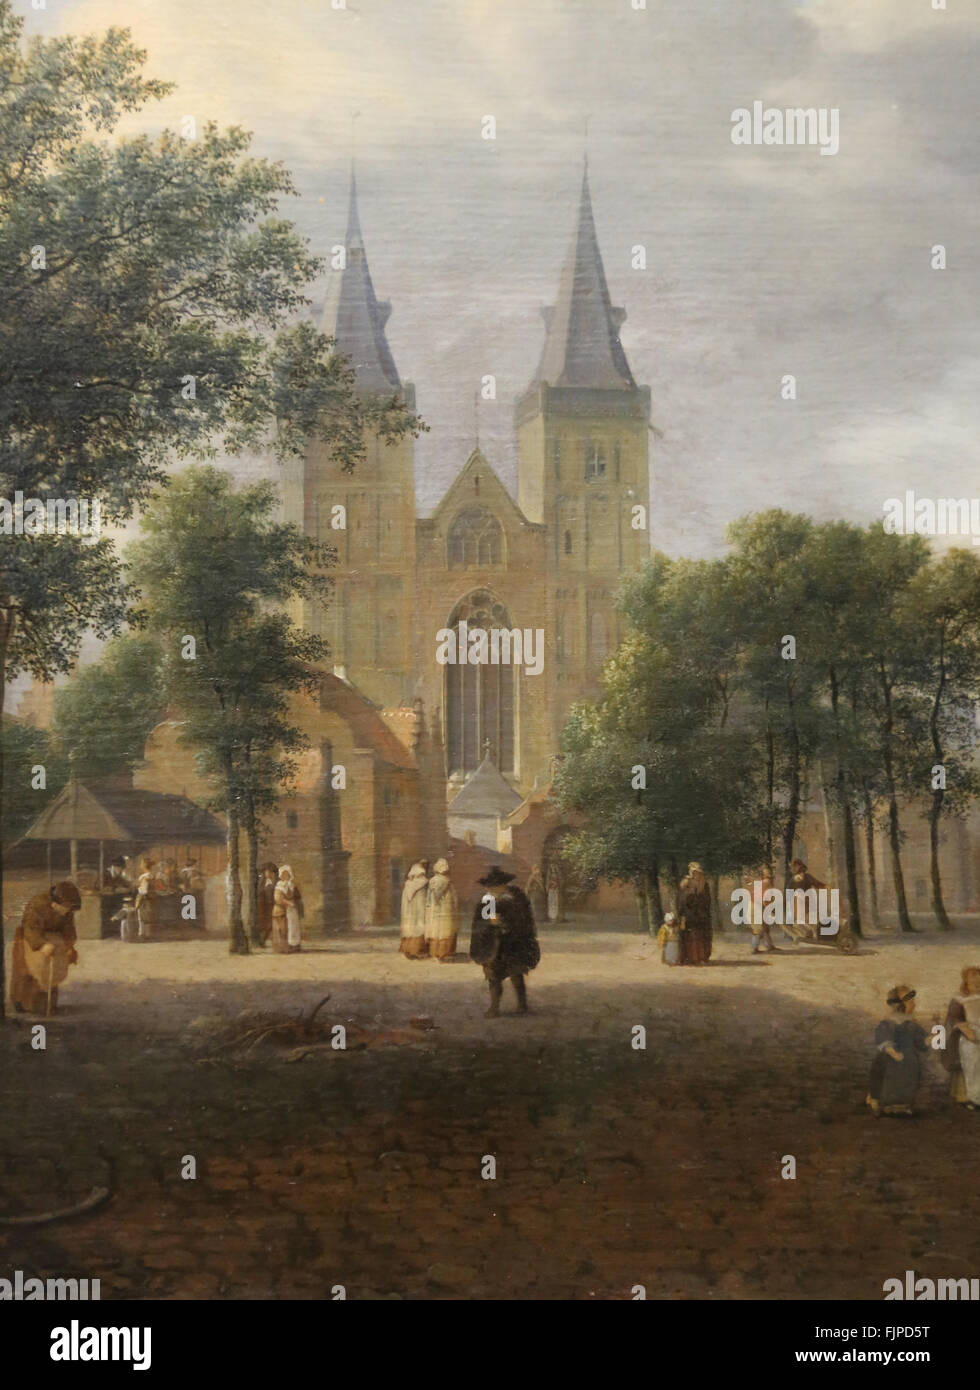 Jan van der Heyden (1637-1712). Peintre hollandais. Square et église St Victor, Xanten, Allemagne. 1692. Musée du Louvre. Paris. La France. Banque D'Images